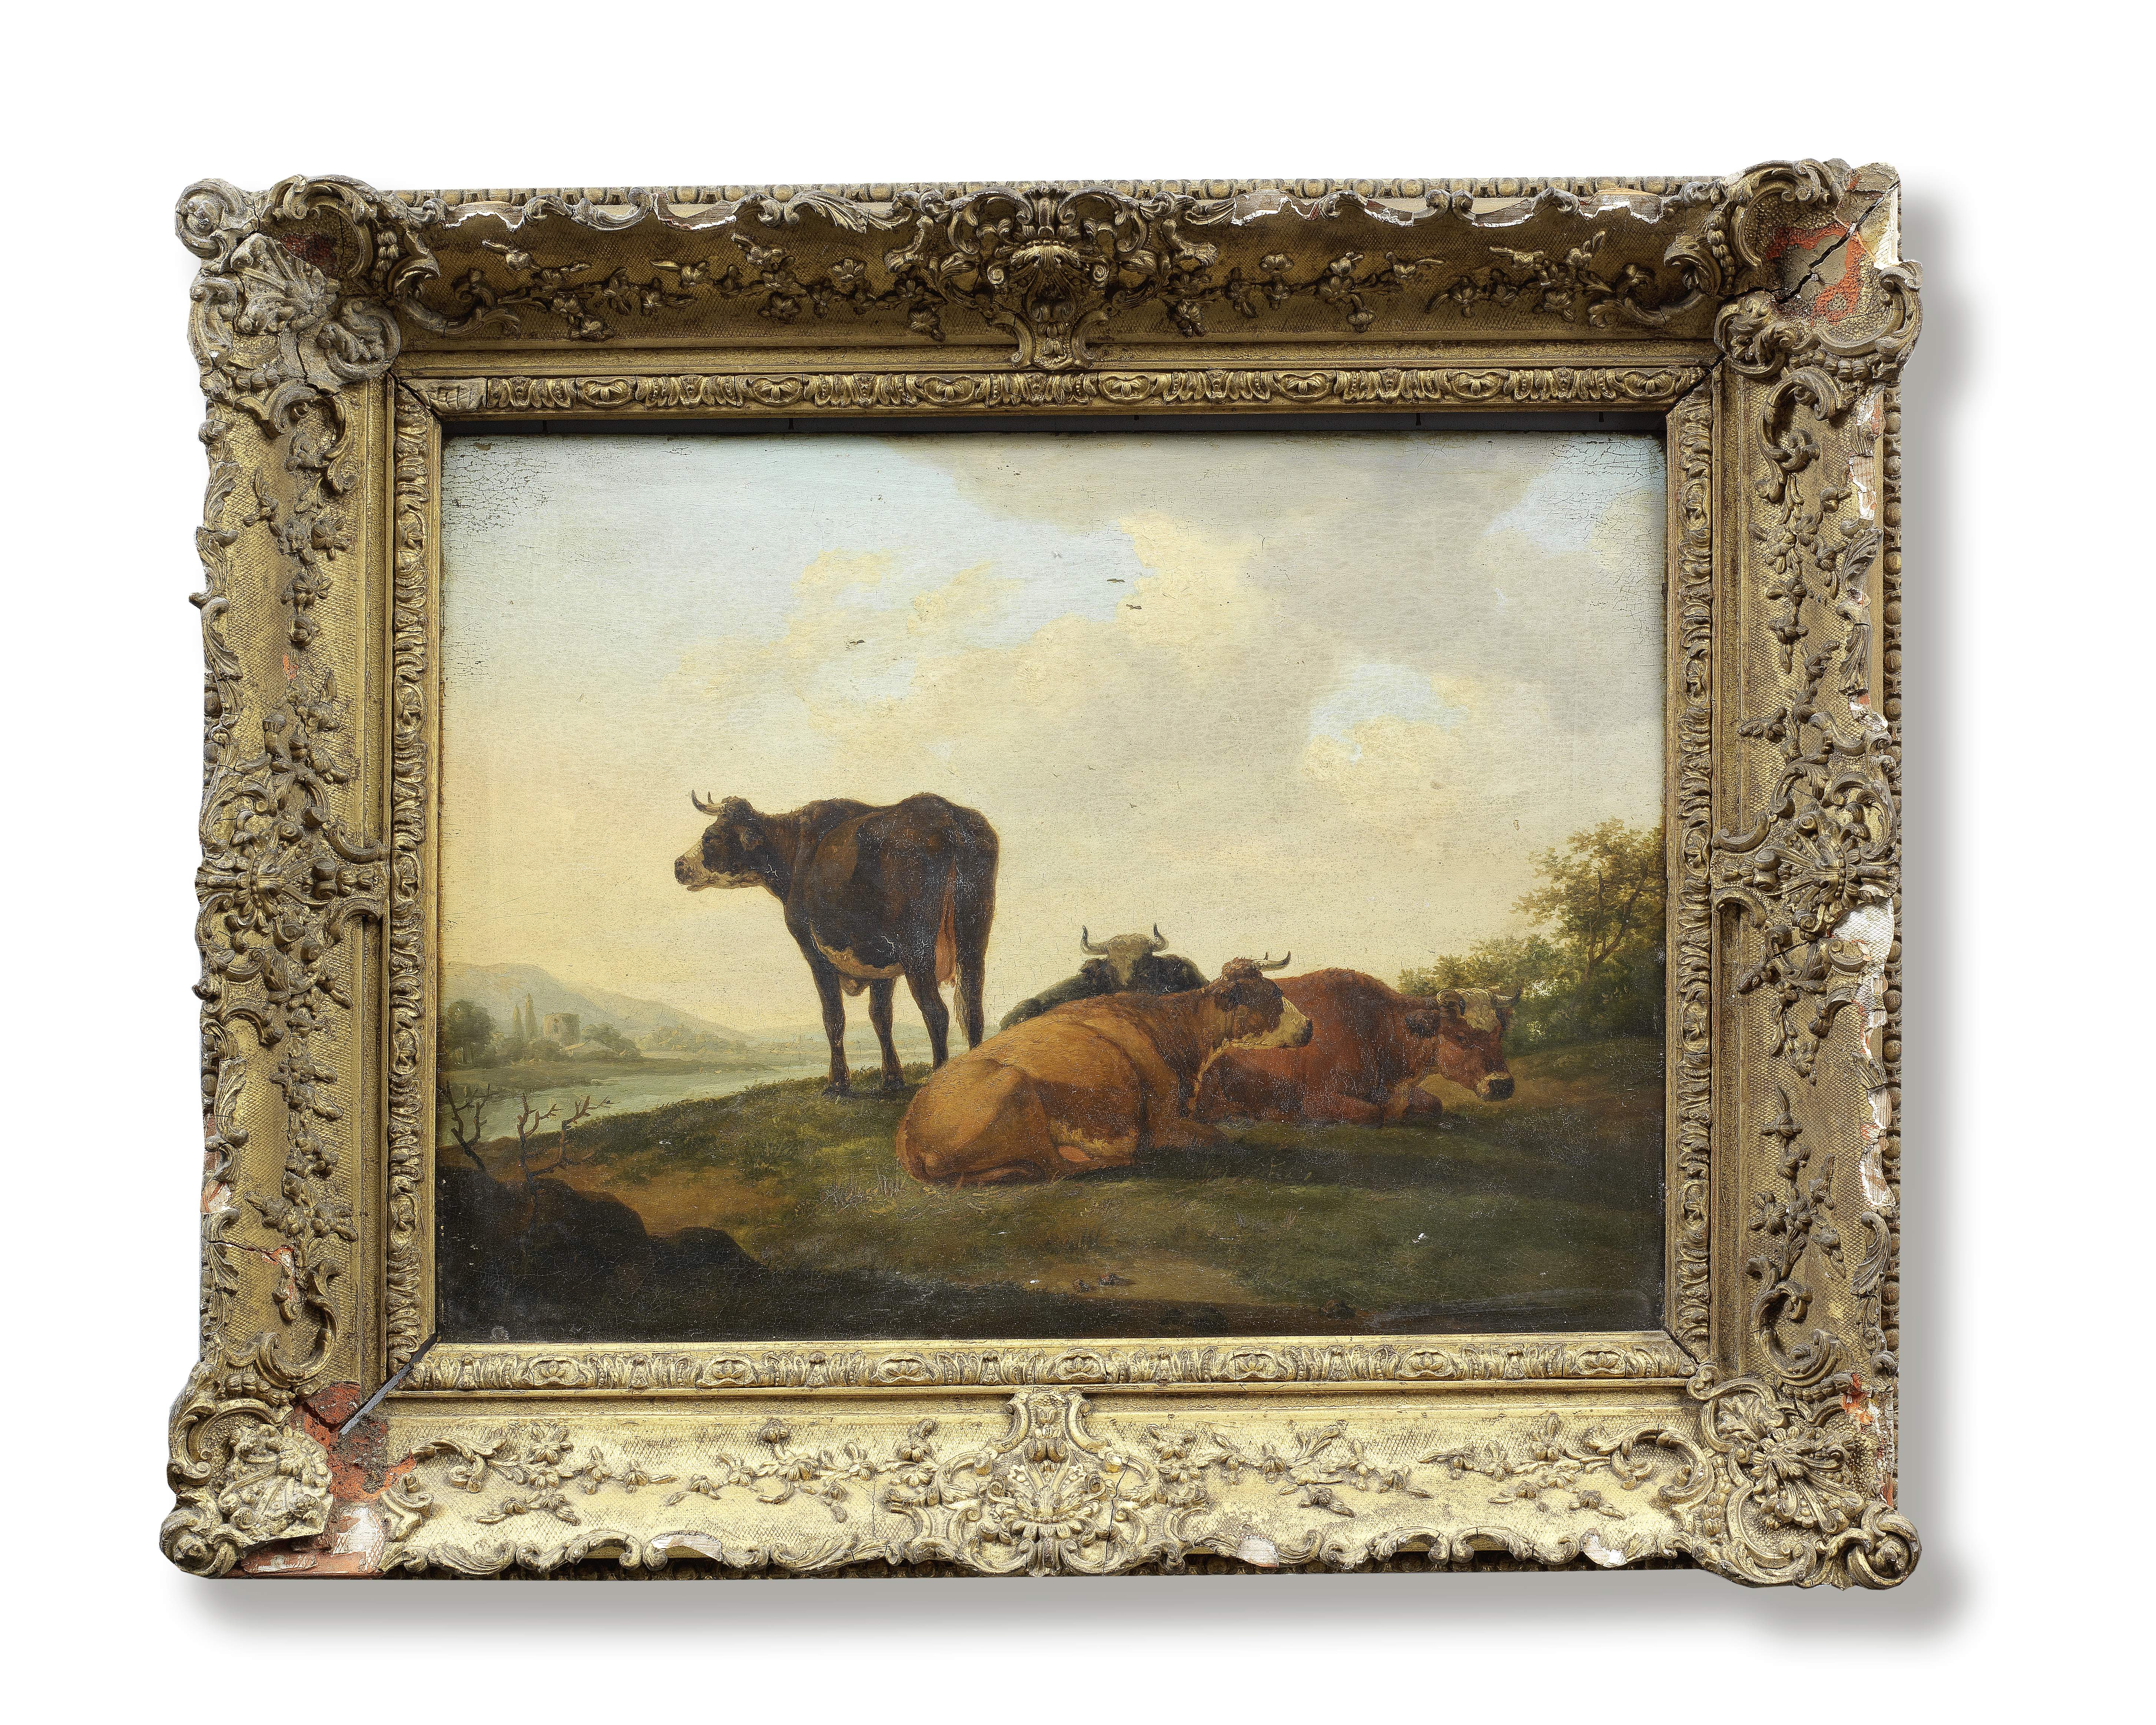 Follower of Aelbert Cuyp (Dordrecht 1620-1691) Cows in a river landscape